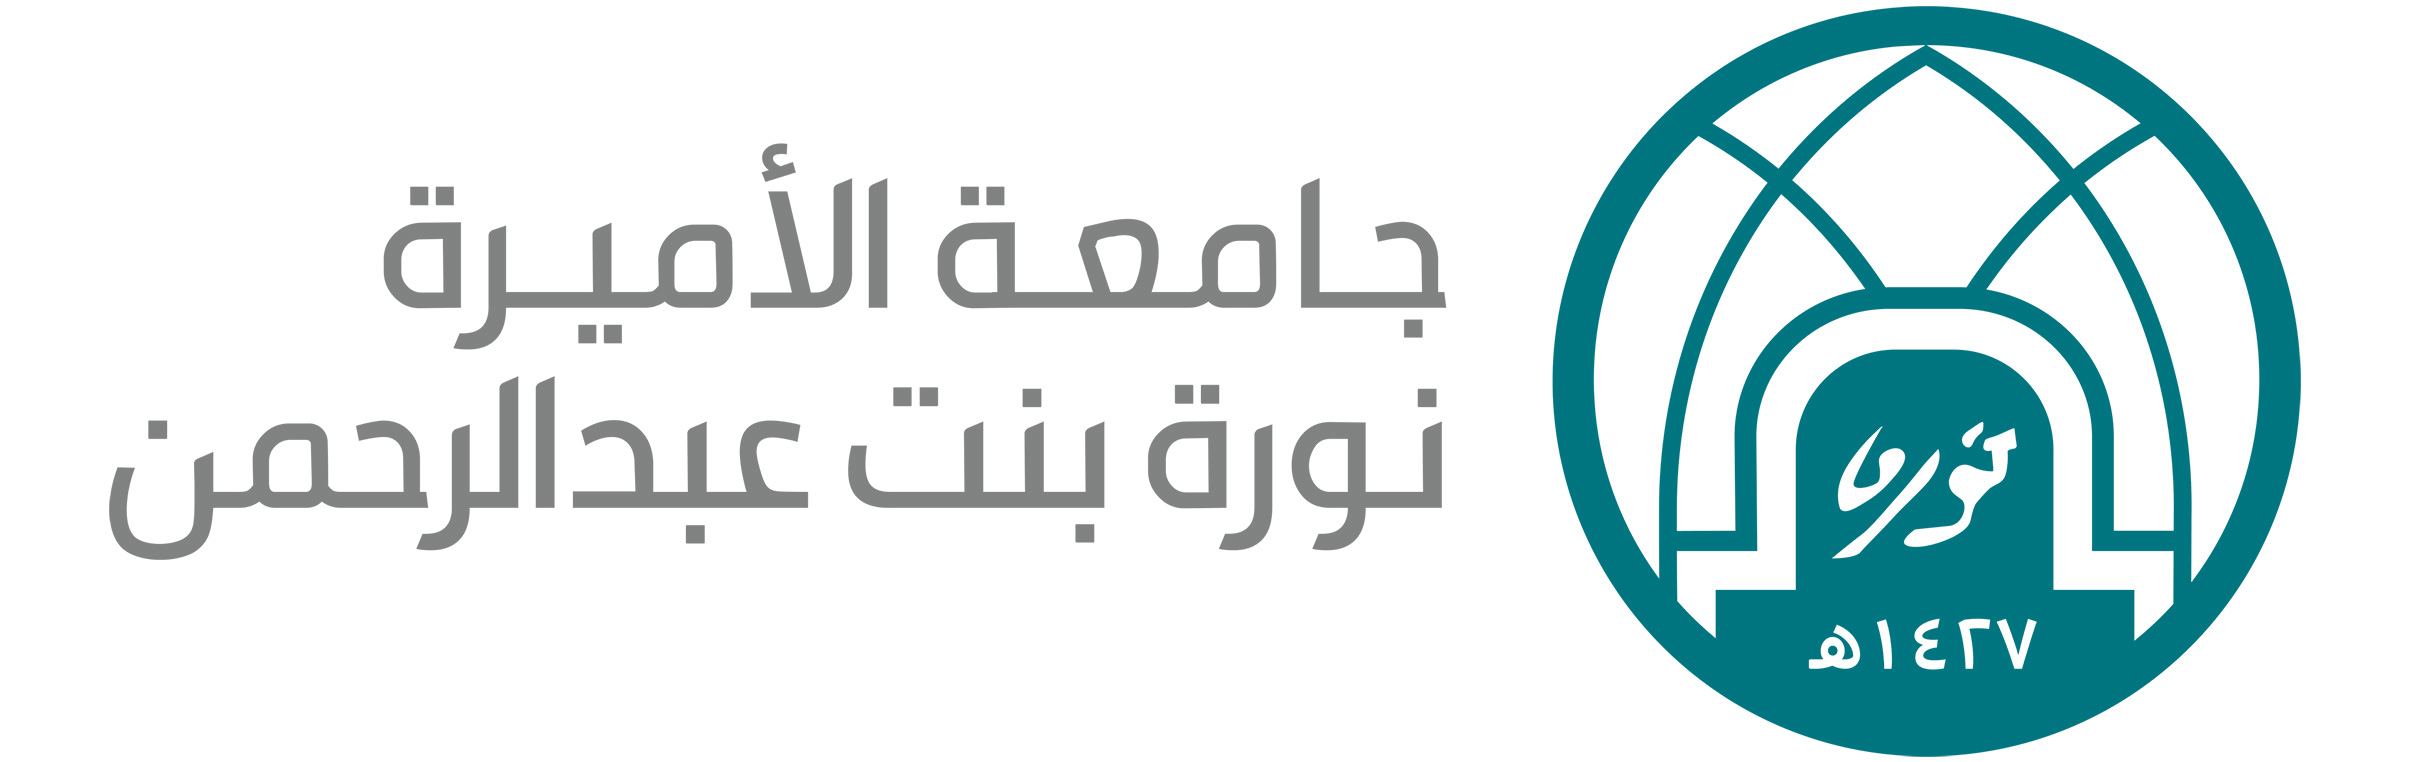 الجمعية السعودية للإرشاد النفسي بجامعة الأميرة نورة بنت عبد الرحمن.jpg